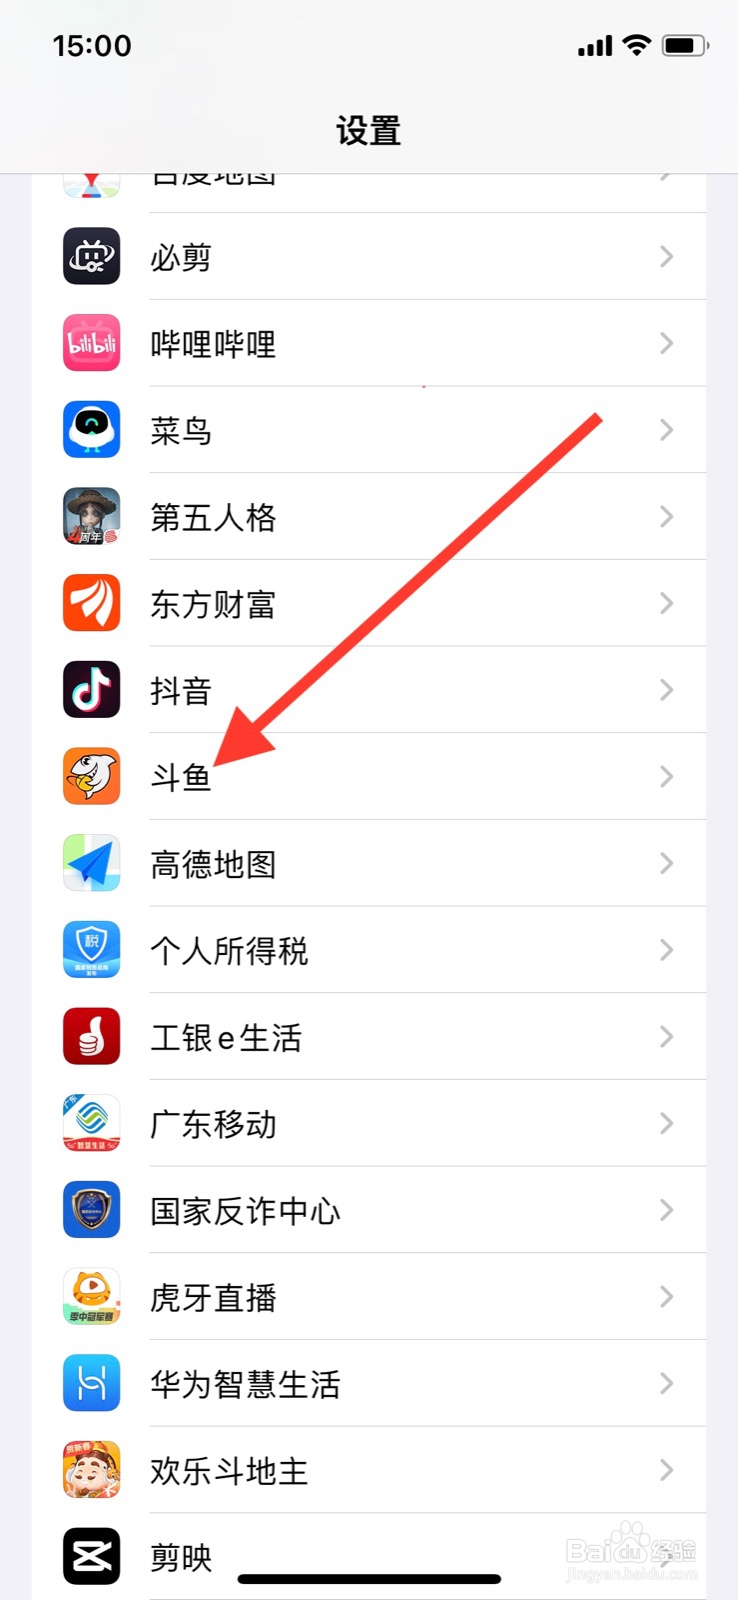 <b>iPhone启动“斗鱼”app使用位置前询问</b>